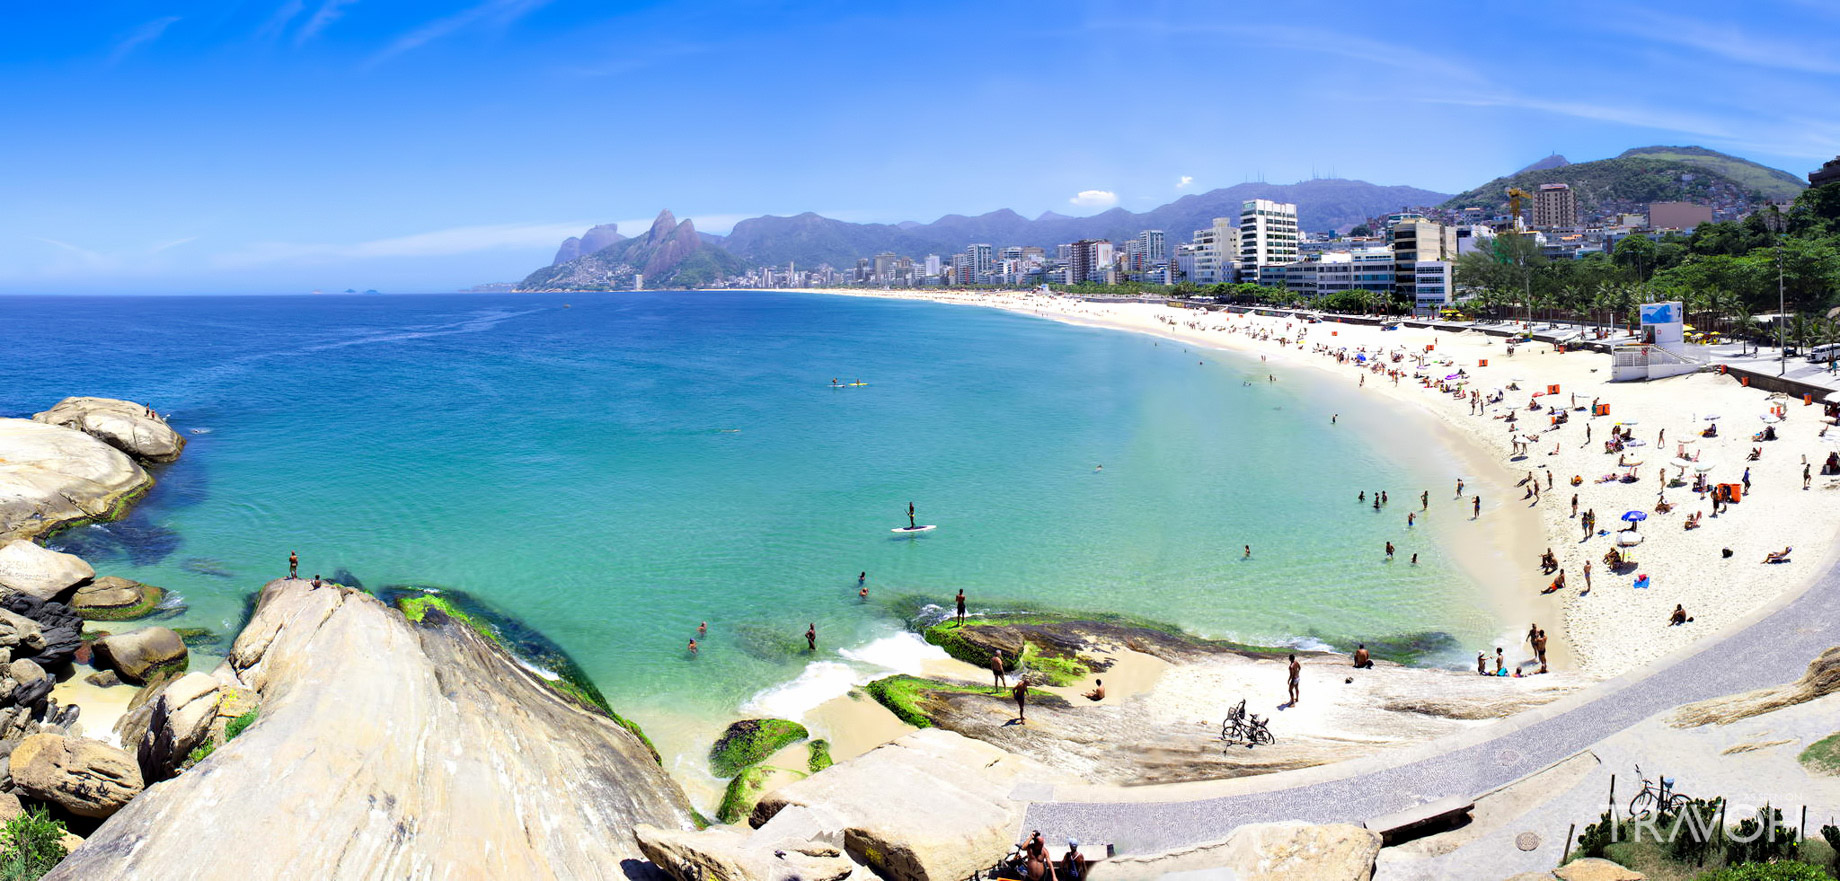 Arpoador Beach - Exploring 10 of the Top Beaches in Rio de Janeiro, Brazil....